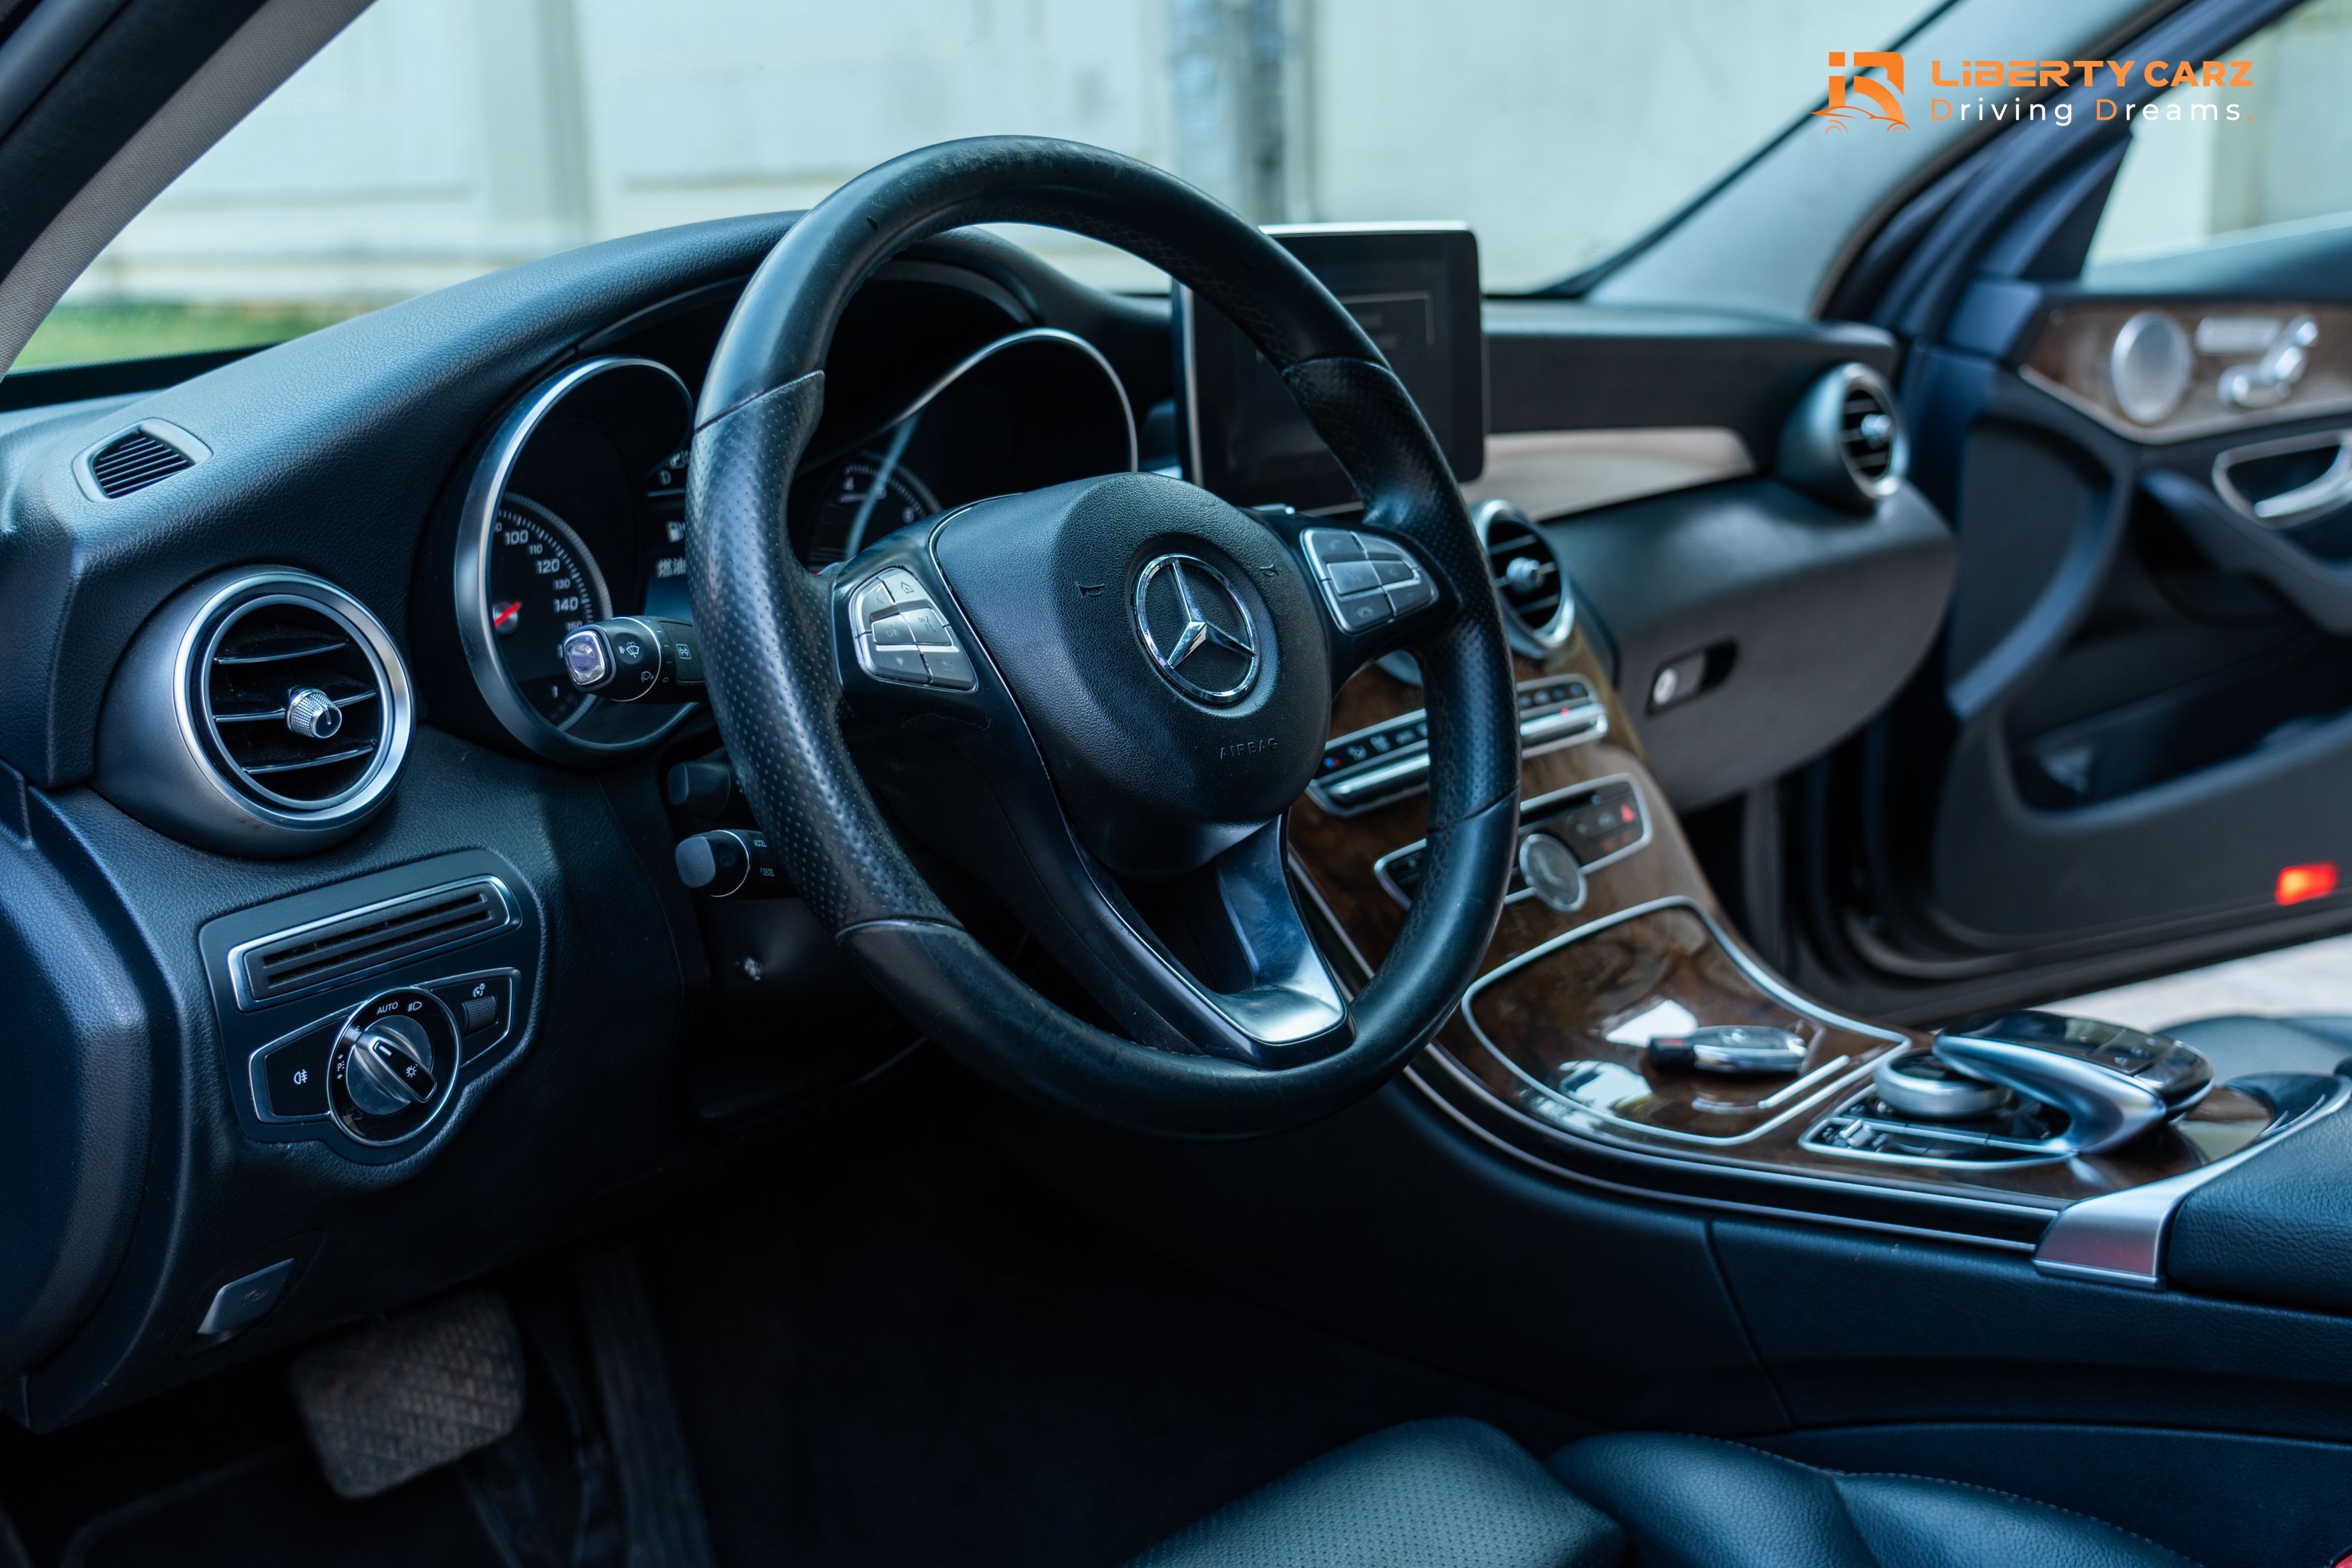 Mercedes-Benz C300 2015